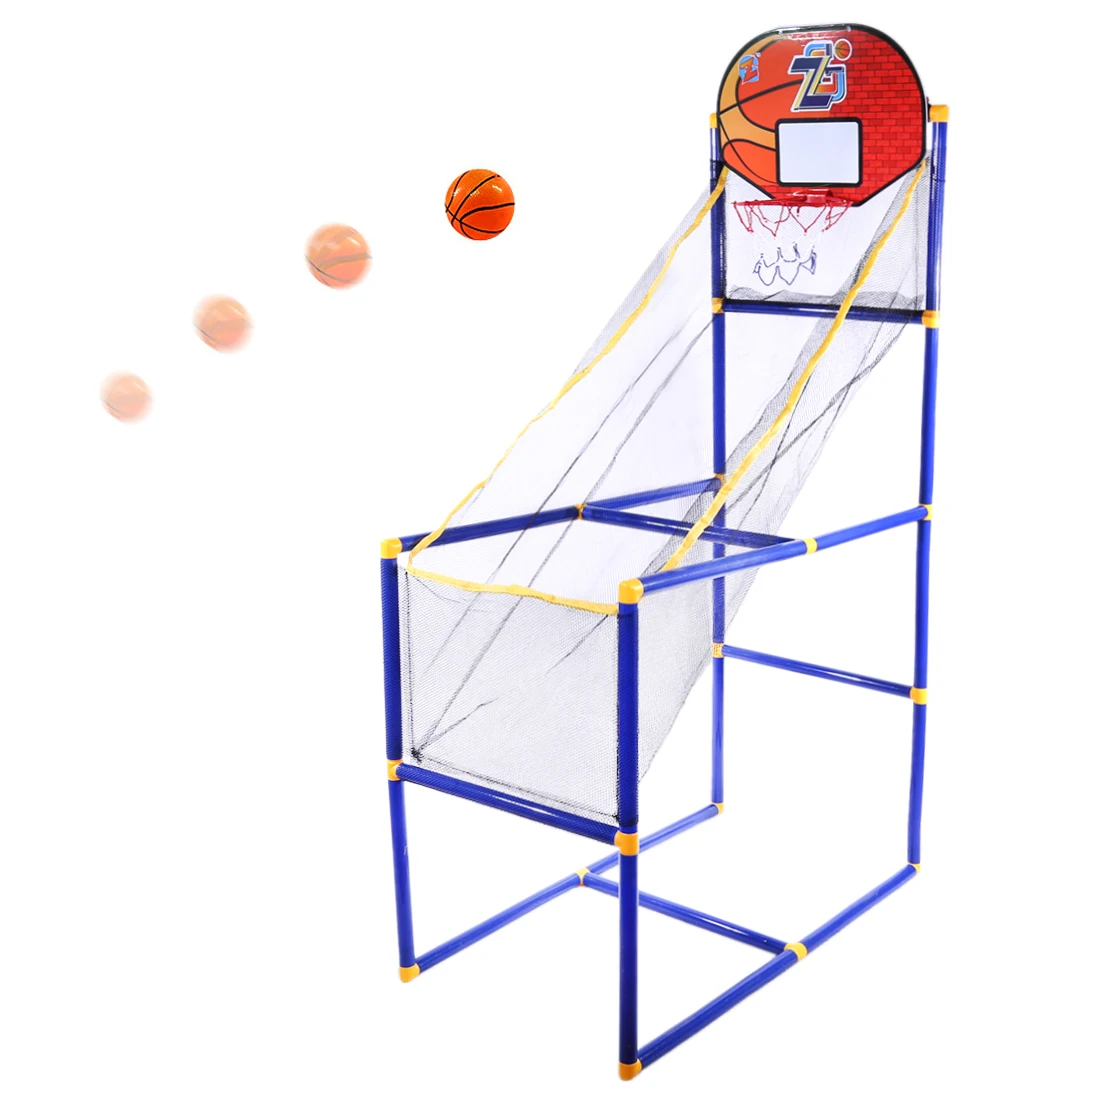 Surwish 149 см детское спортивное снаряжение для дома и улицы баскетбол, который стреляет шариками воды, игрушечный водомет для детей тренировочные упражнения-ZG270-7